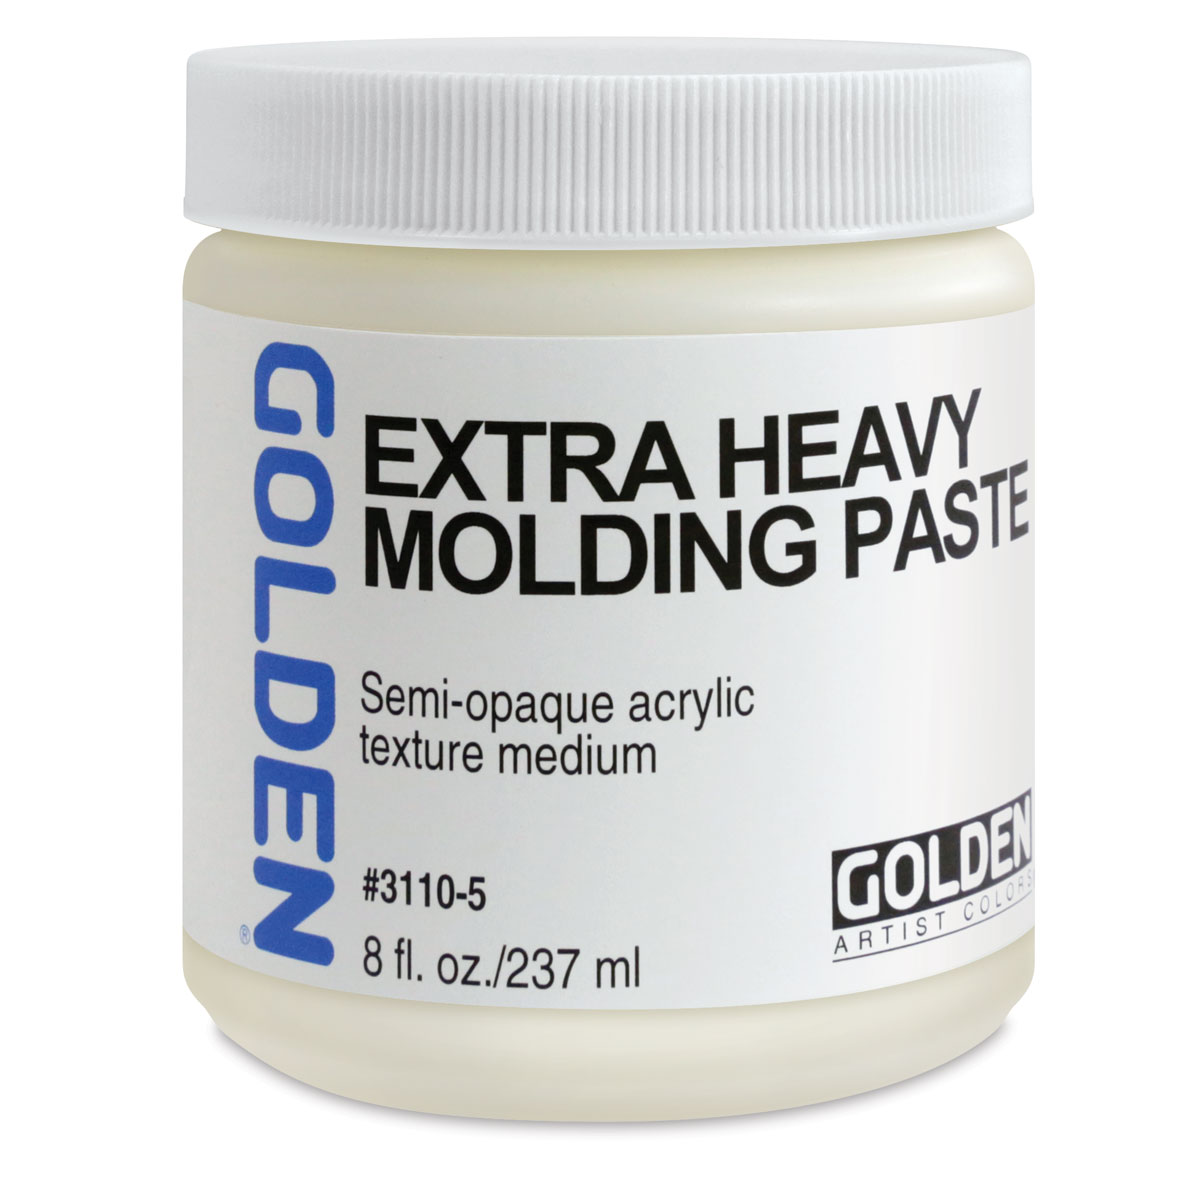 Golden - Molding Paste - Choose Your Texture